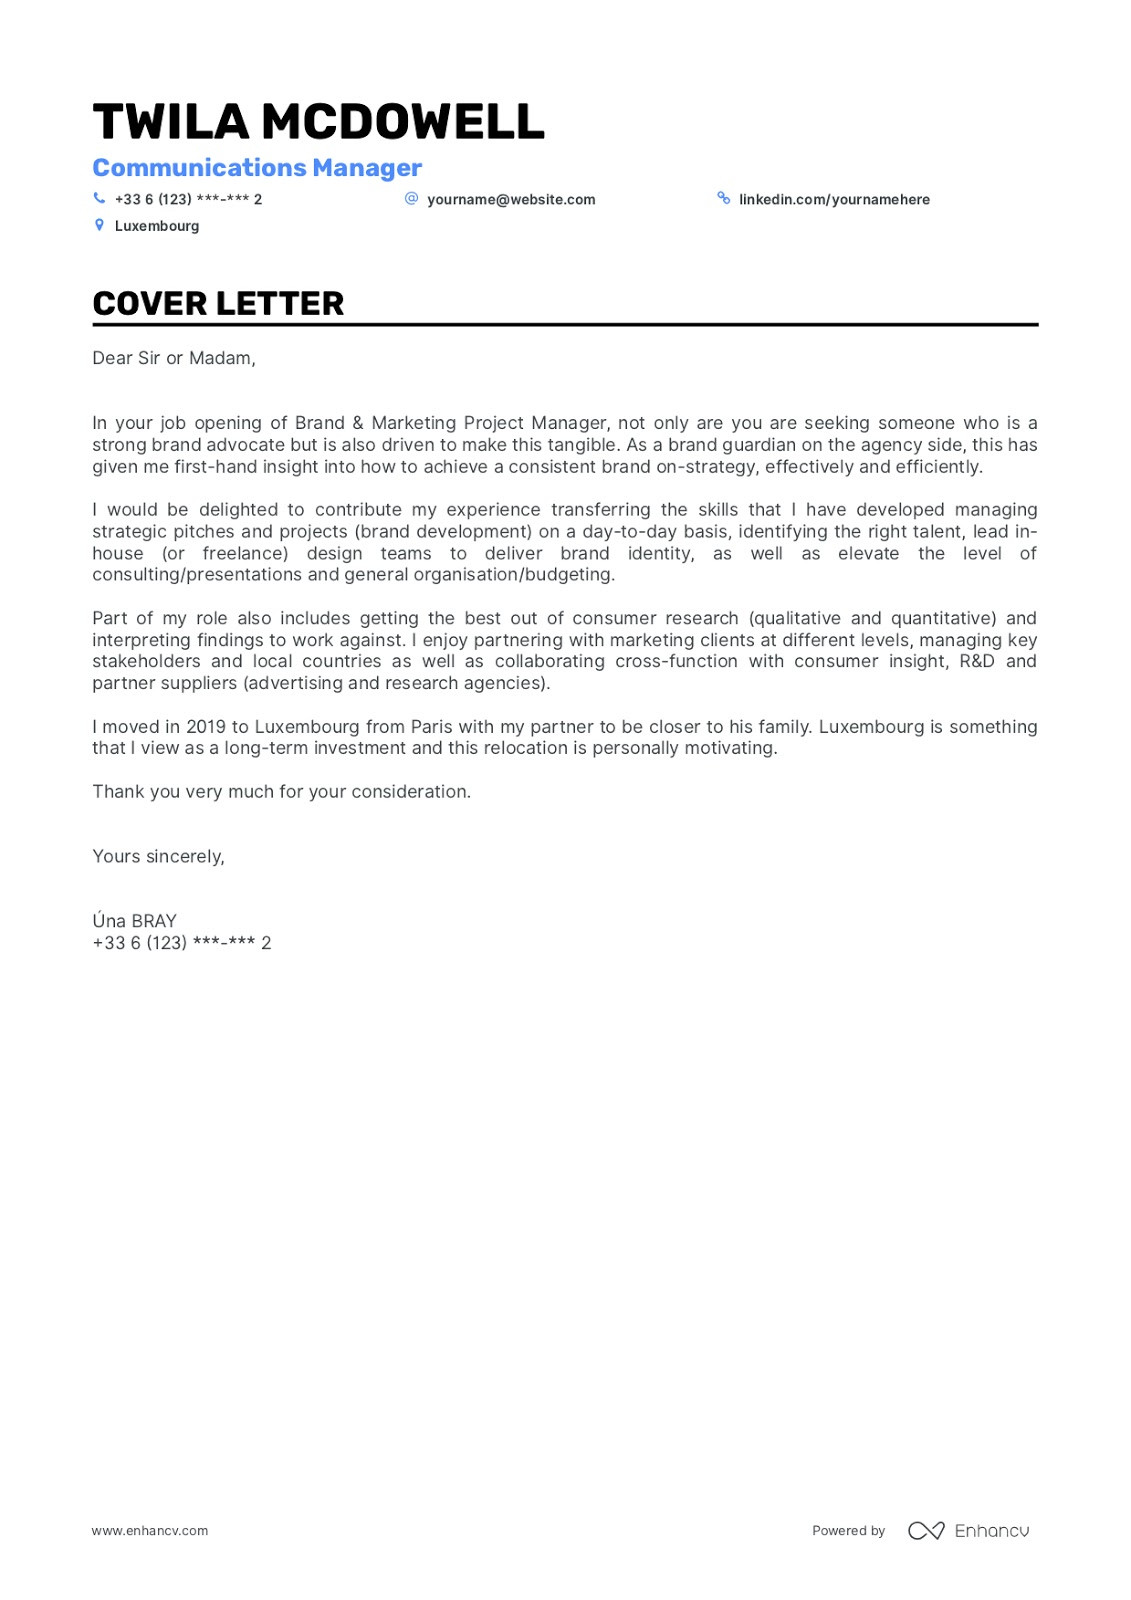 Sample Cover Letter for Functional Resume Cover Letter Design: 5lancarrezekiq Tips & Examples for Success